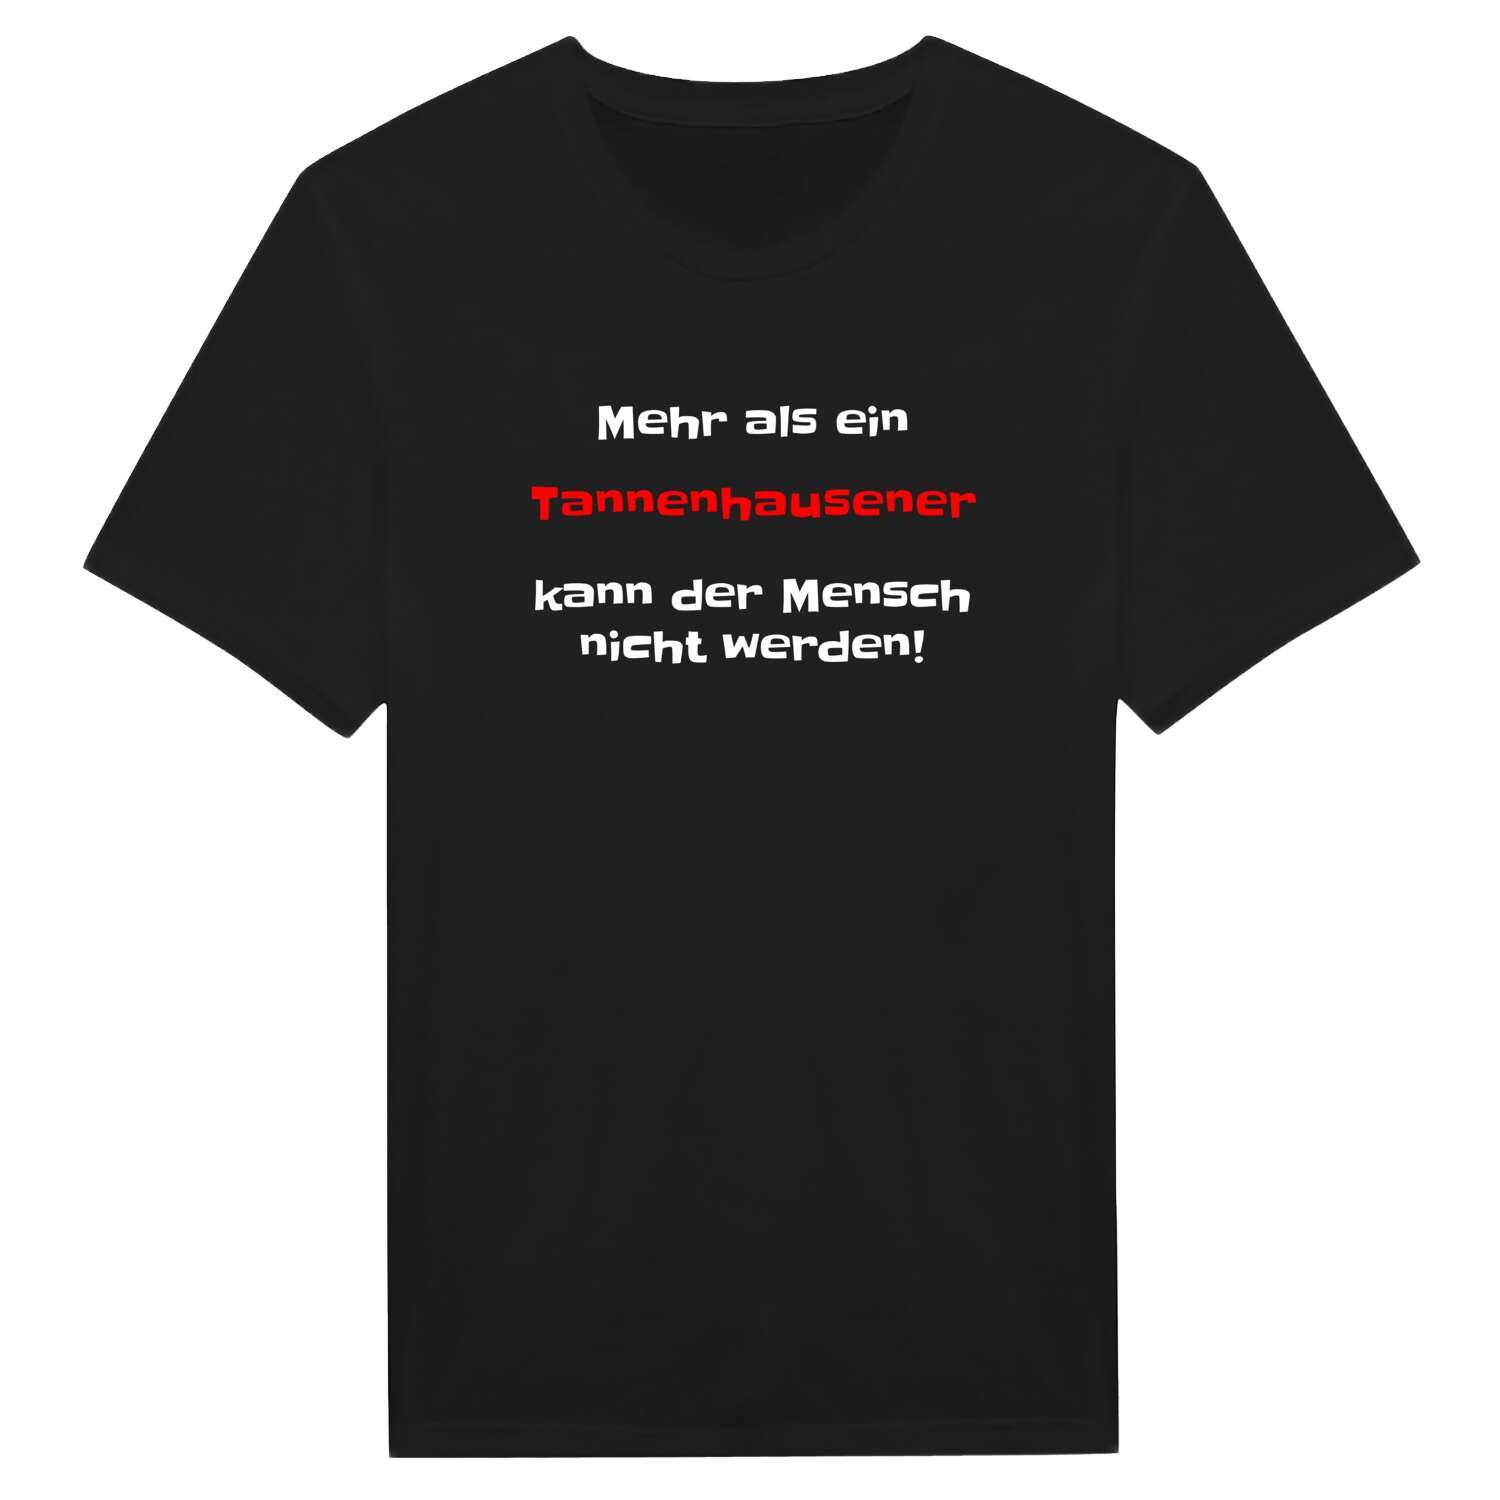 Tannenhausen T-Shirt »Mehr als ein«